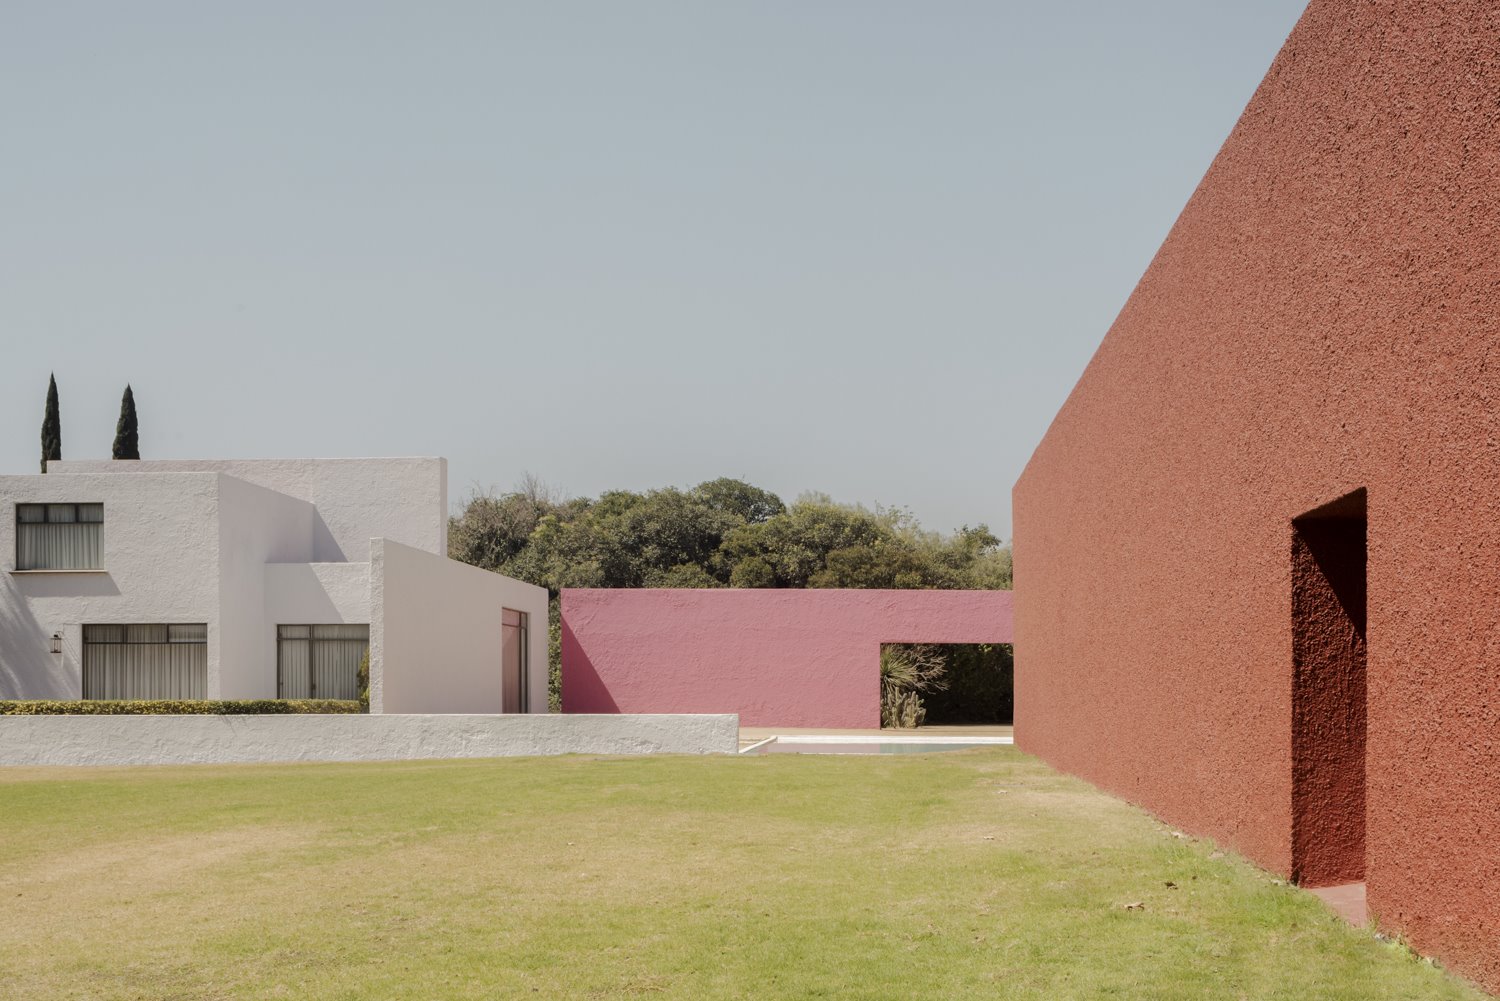 Patio con edificios fachadas en color terracota y color rosa del arquitecto mexicano Luis Barragan